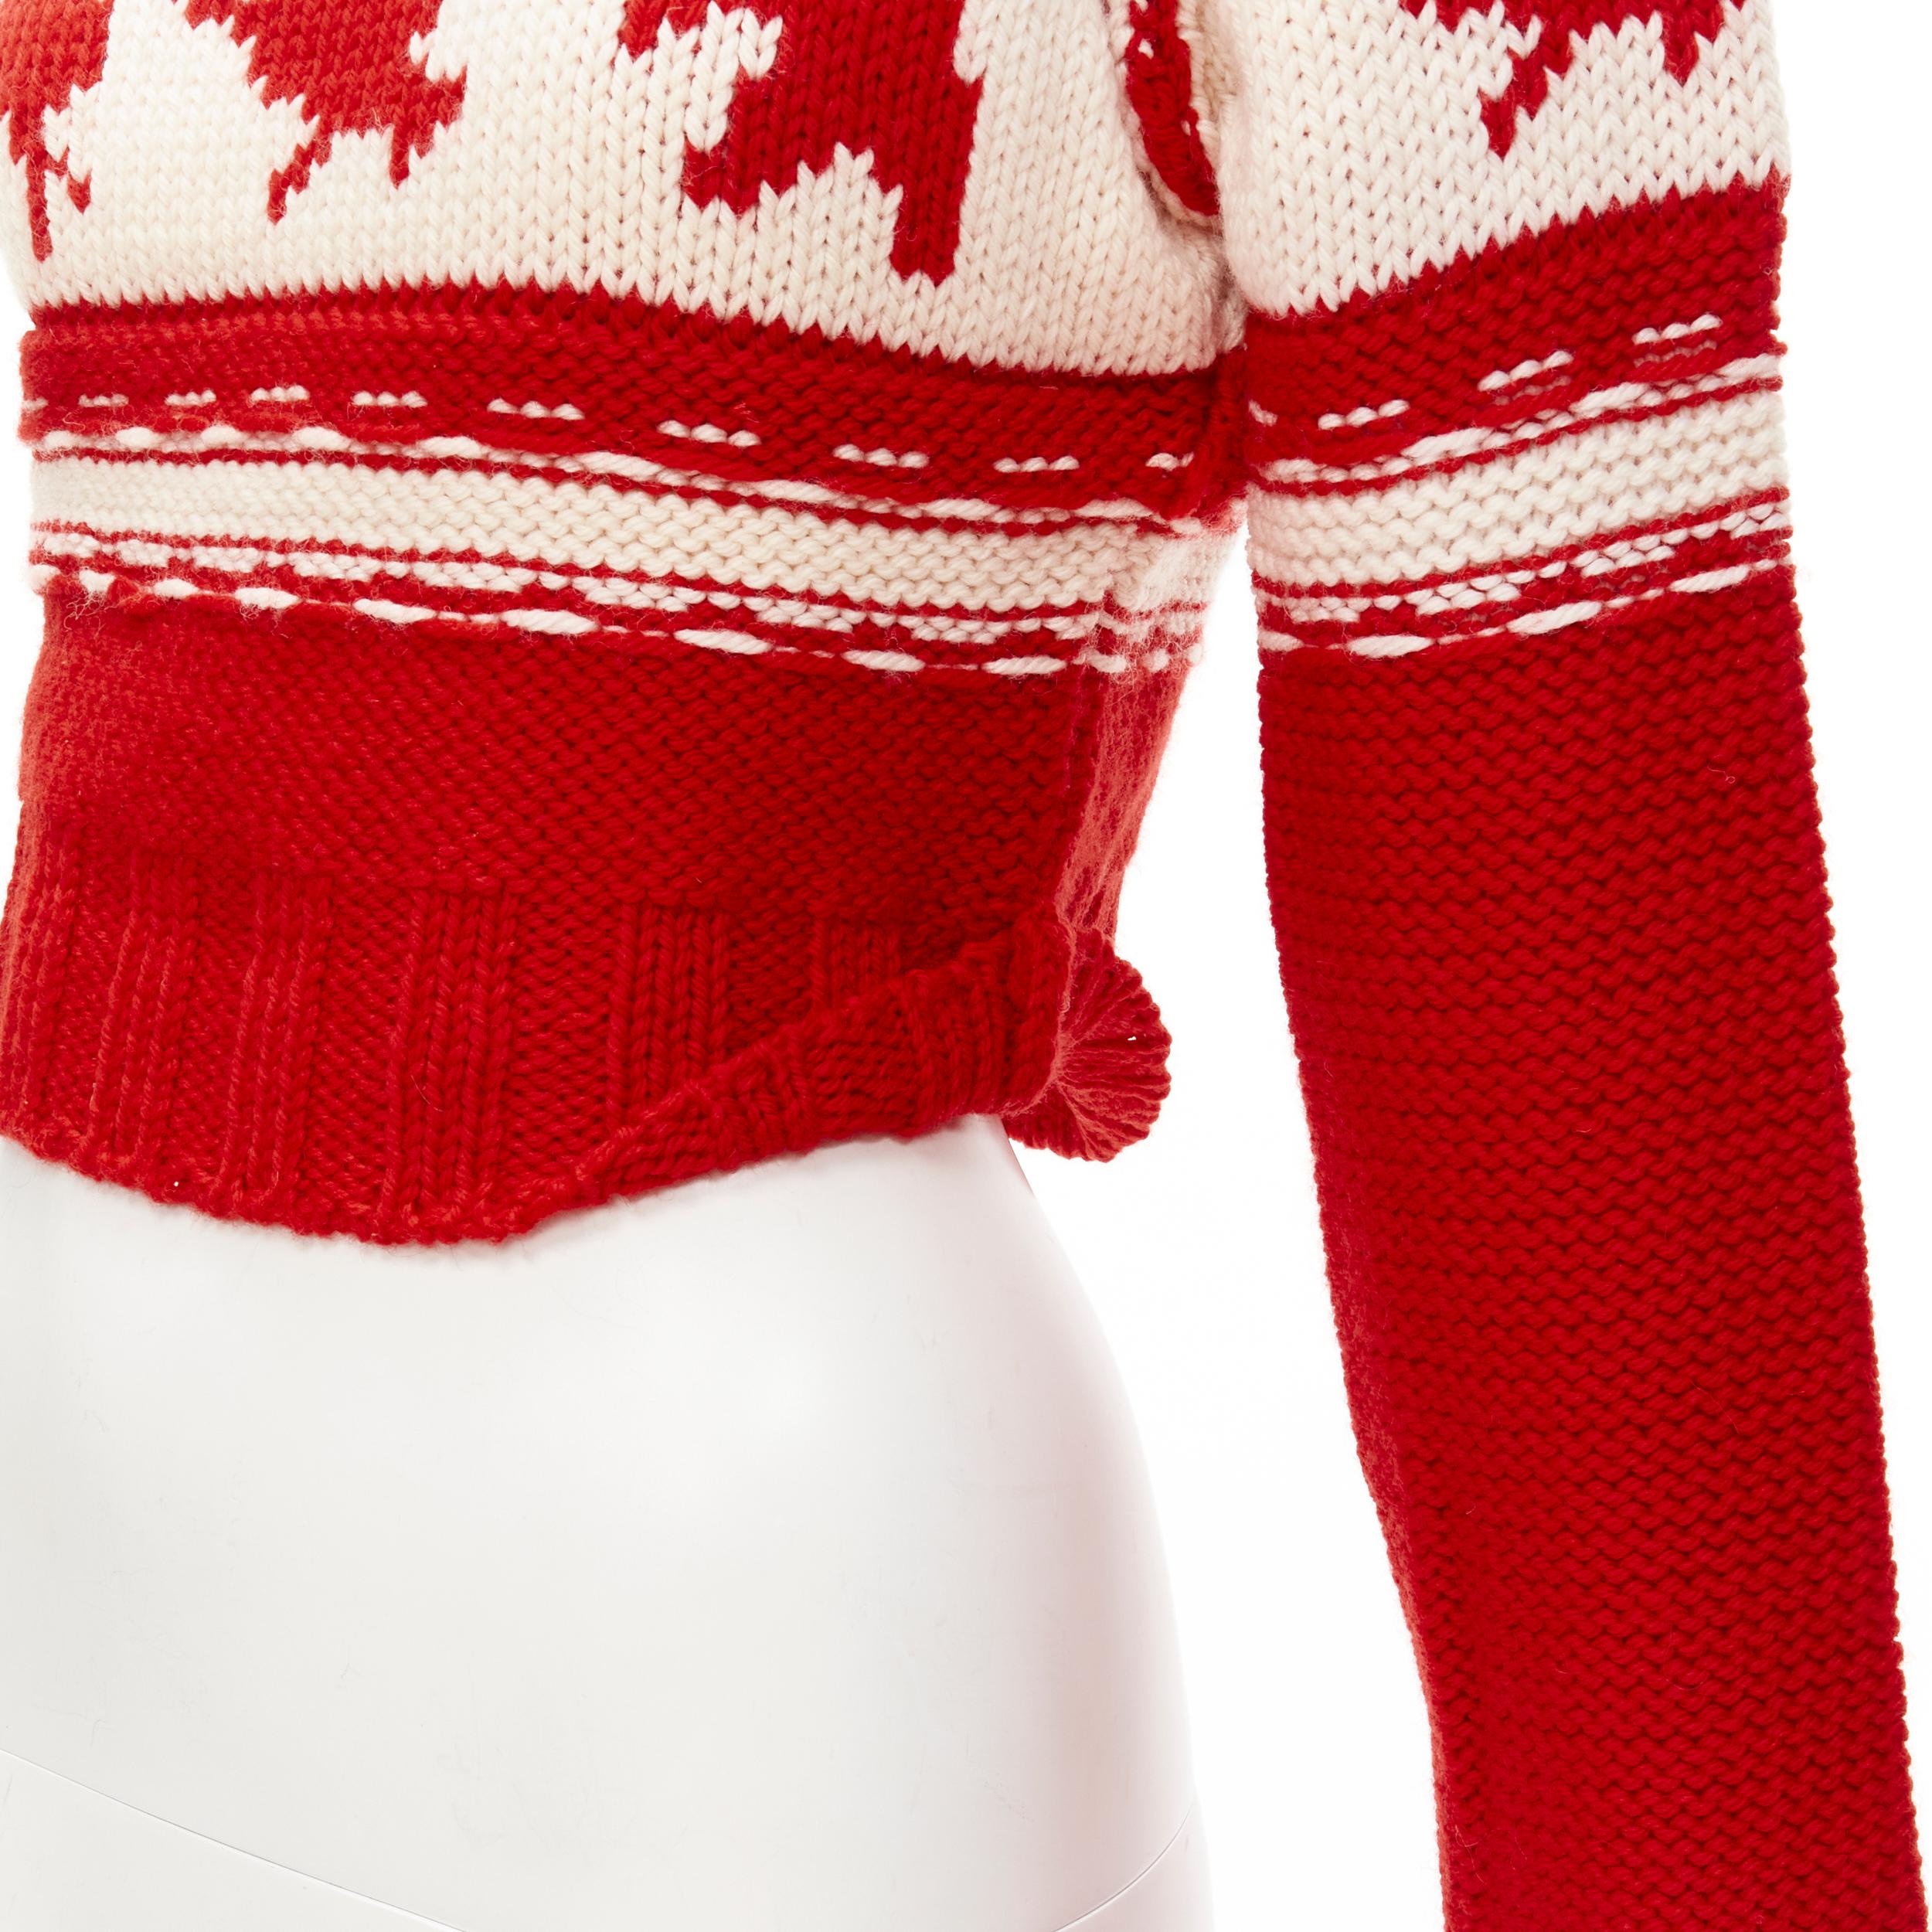 DSQUARED Vintage red white Canadian Christmas cropped turtleneck sweater S
Marque : Dsquared2
MATERIAL : Semblable à de la laine
Couleur : Rouge
Motif : Abstrait
Détail supplémentaire : Col roulé. Manches raglan. Coupe courte.

CONDITION :
Condition